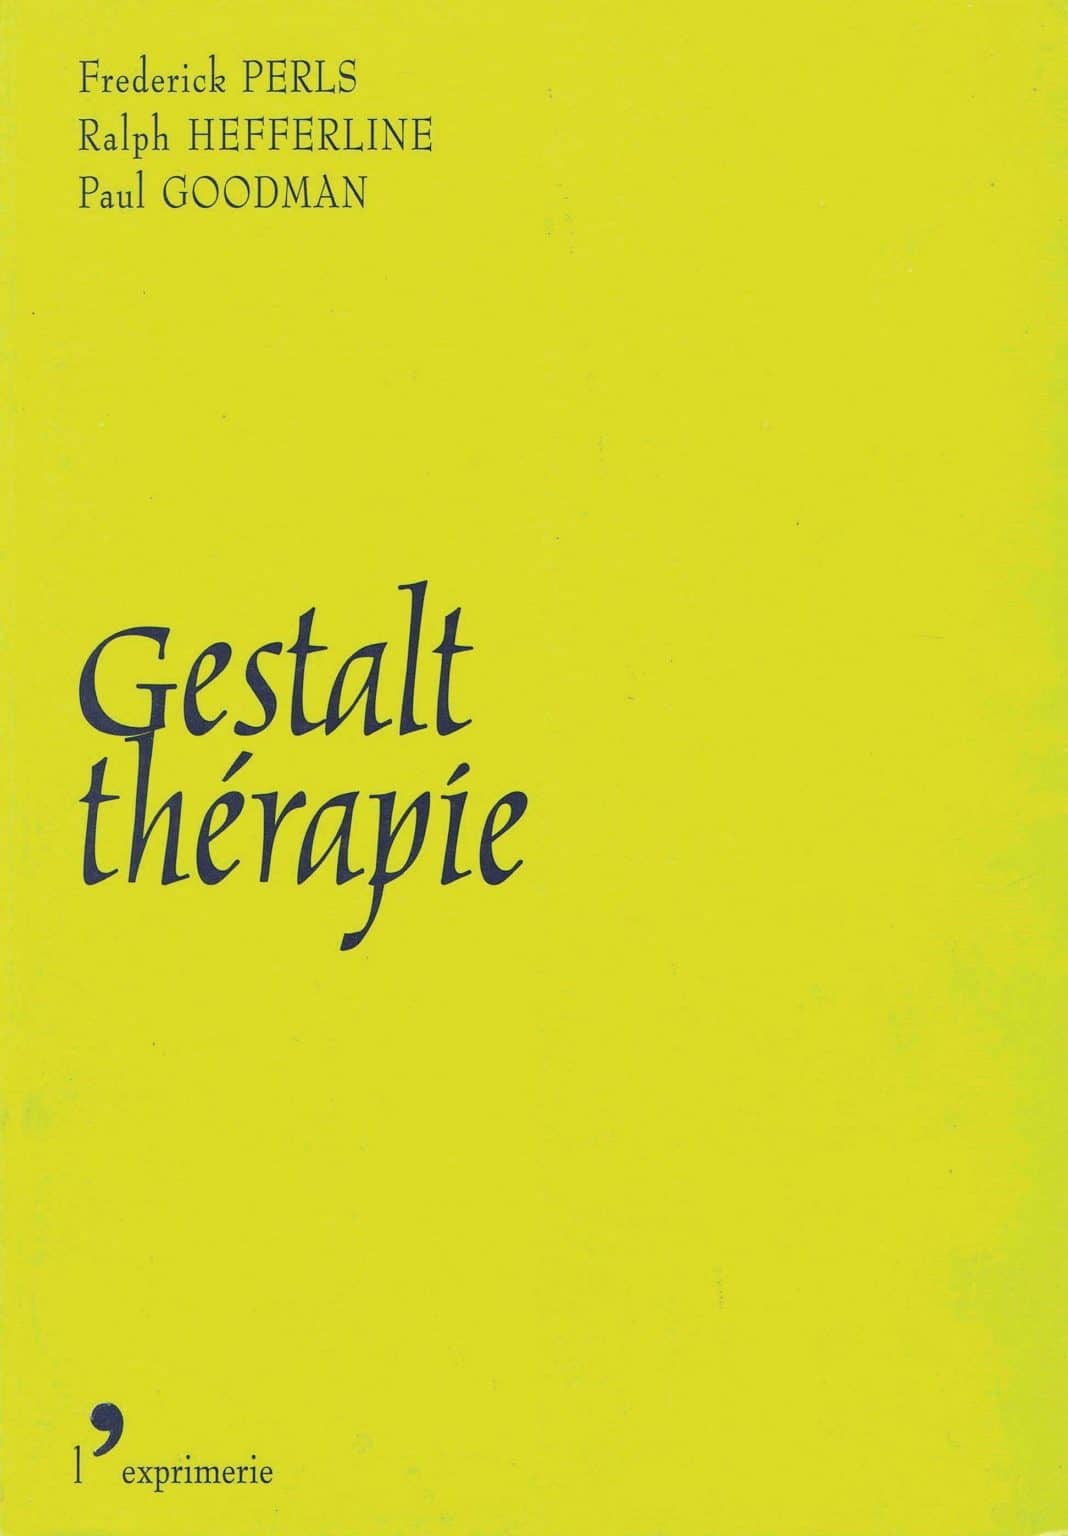 La couverture du livre Gestalt thérapie, co-écrit par Frédérick Perls, Ralph Hefferline et Paul Goodman.